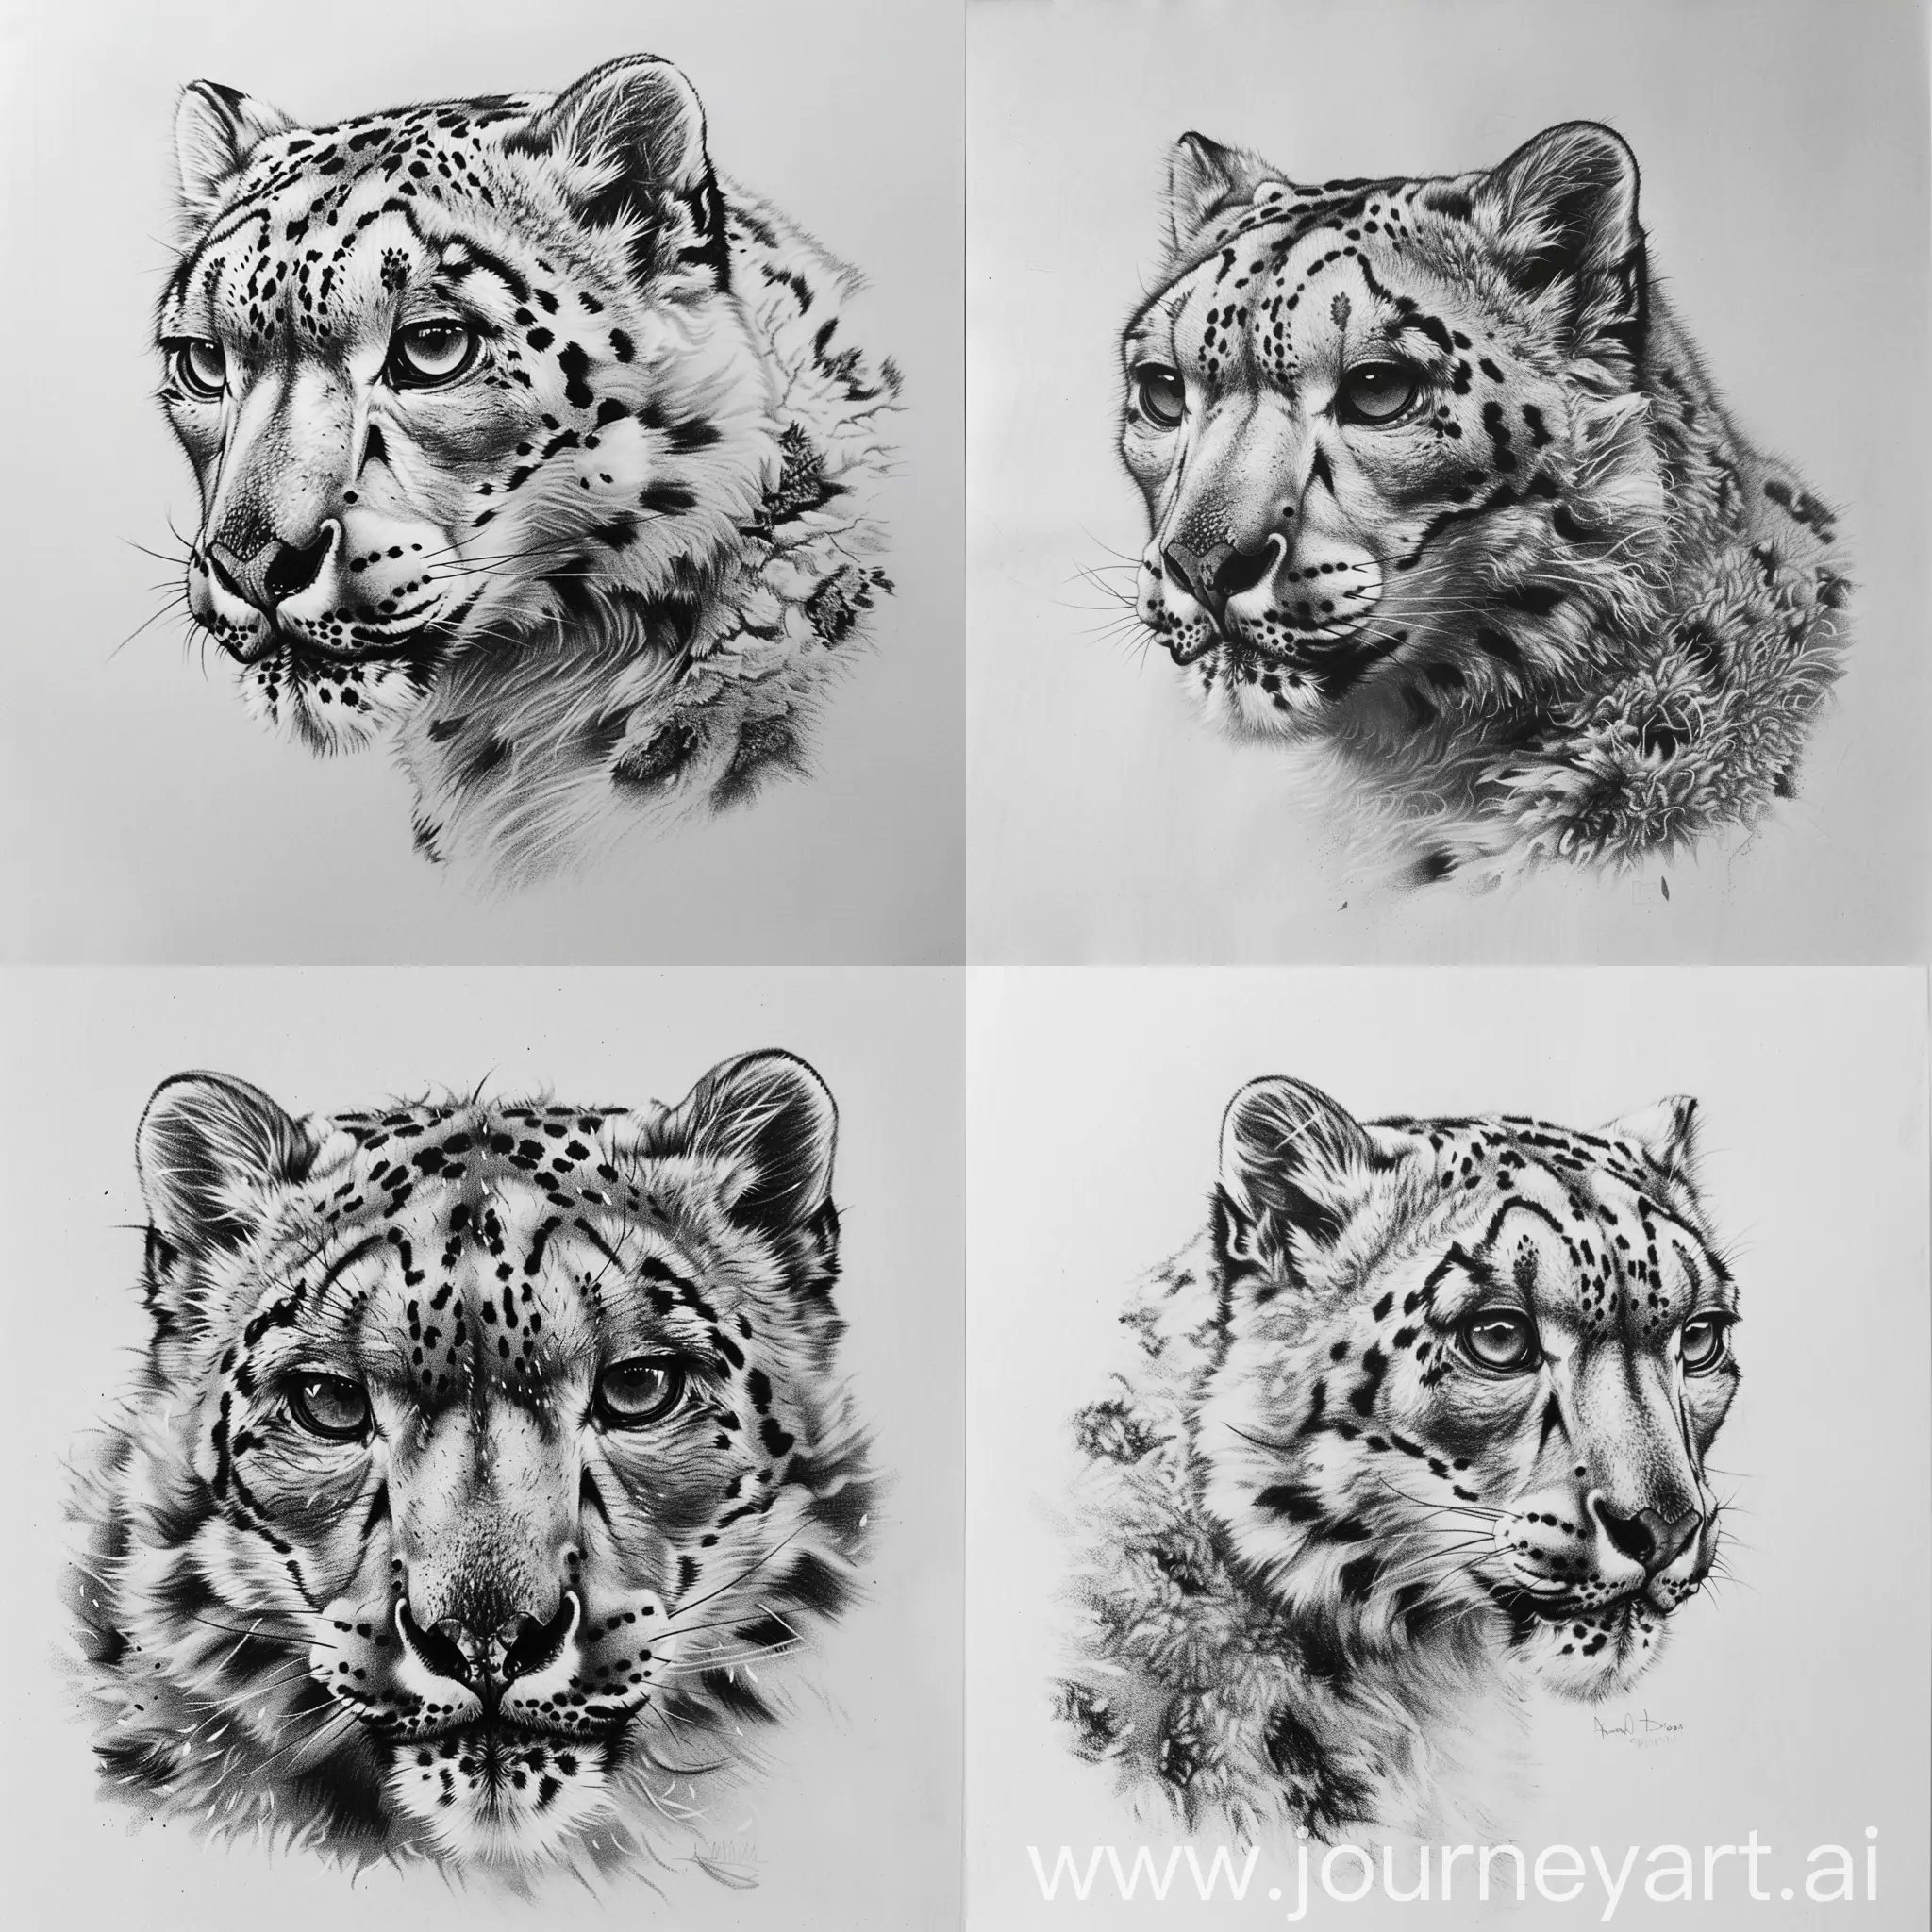 Graceful-Snow-Leopard-Pencil-Drawing-Exquisitely-Detailed-Contour-Artwork